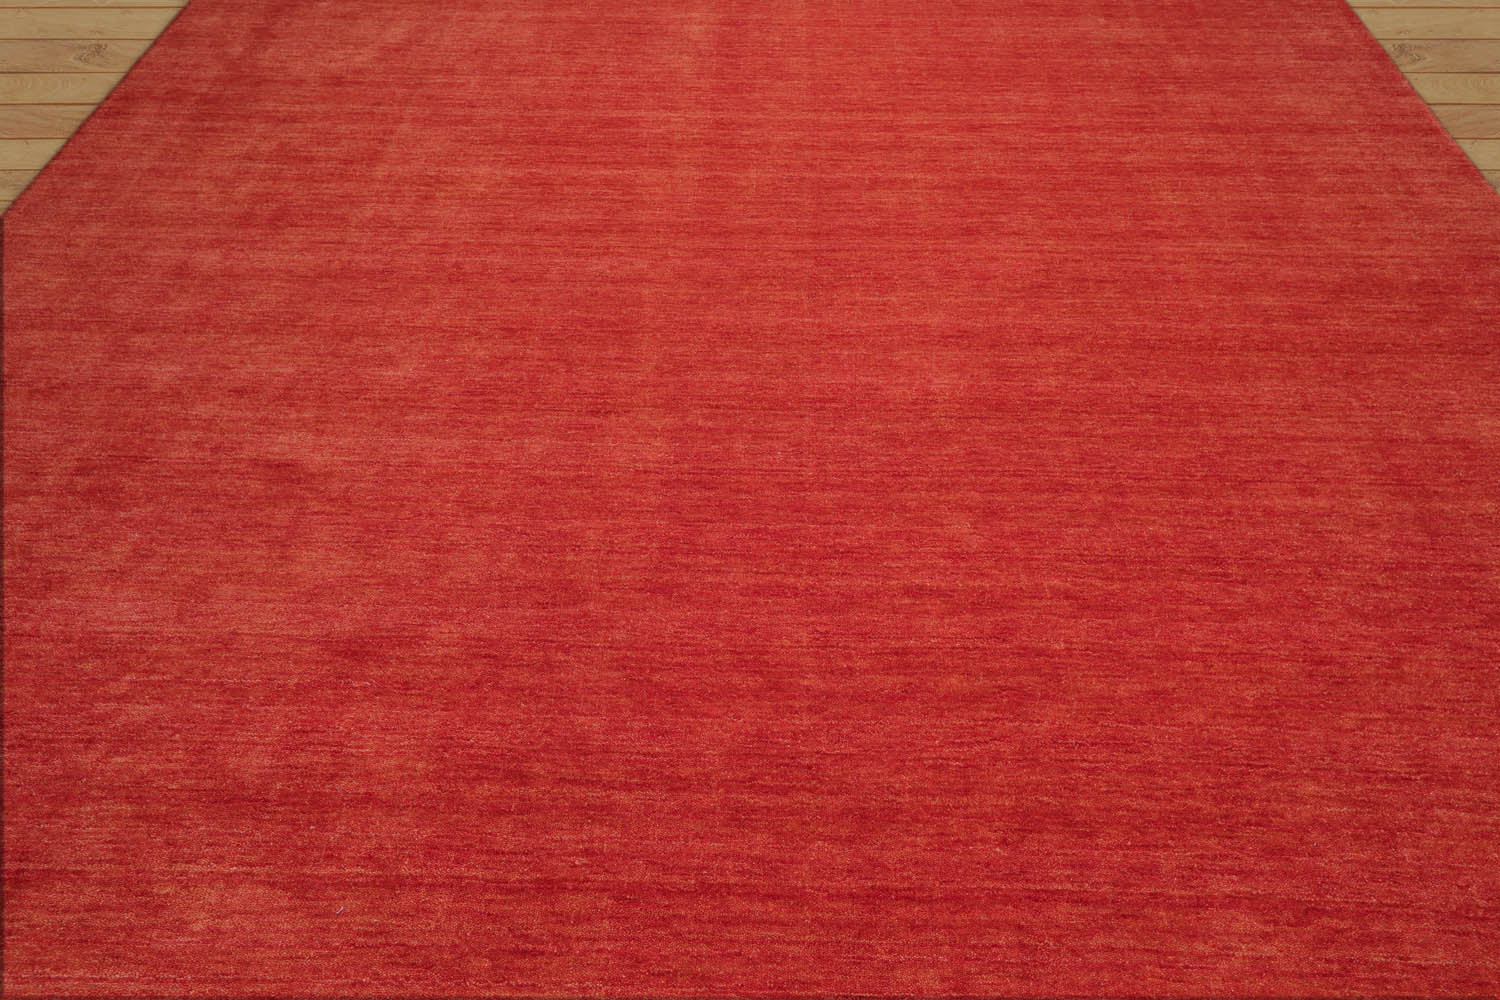 Credle 8x10 Hand Knotted Handmade wool Plain Solid Minimalist Area Rug Burnt Orange